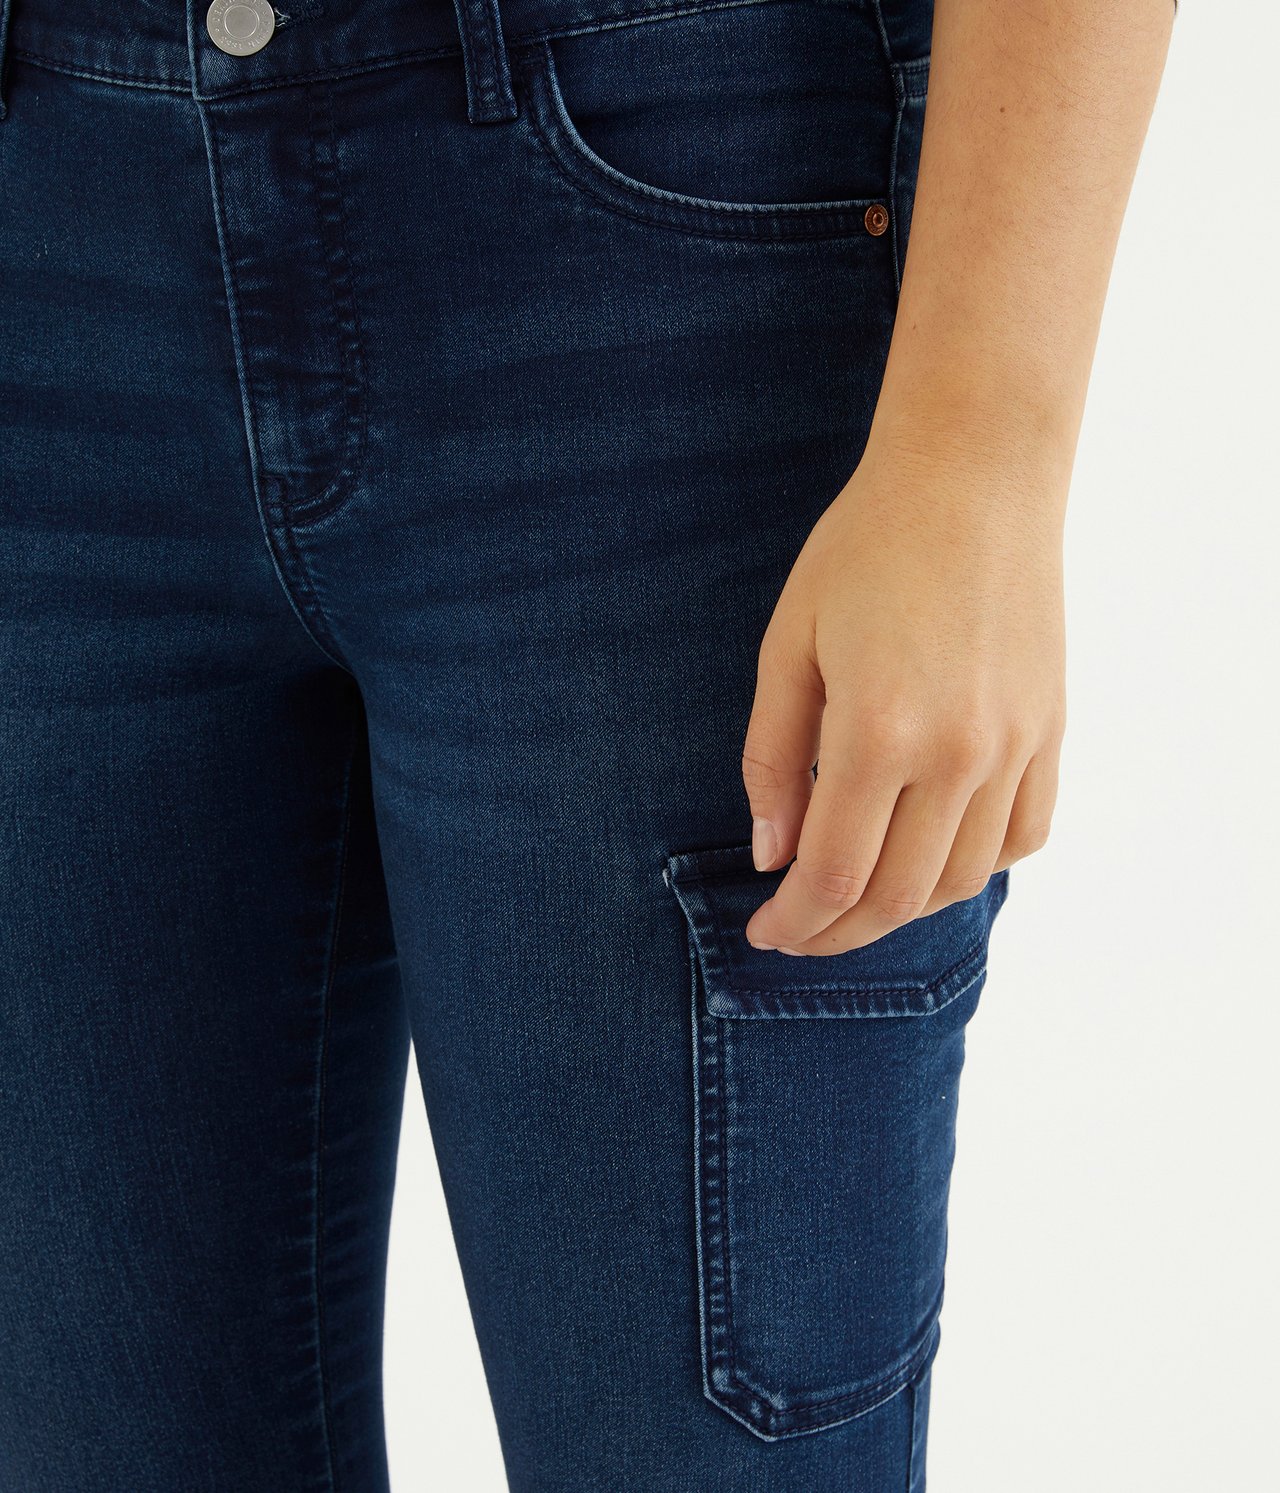 Jeans med sidelommer - Mørk denim - 3